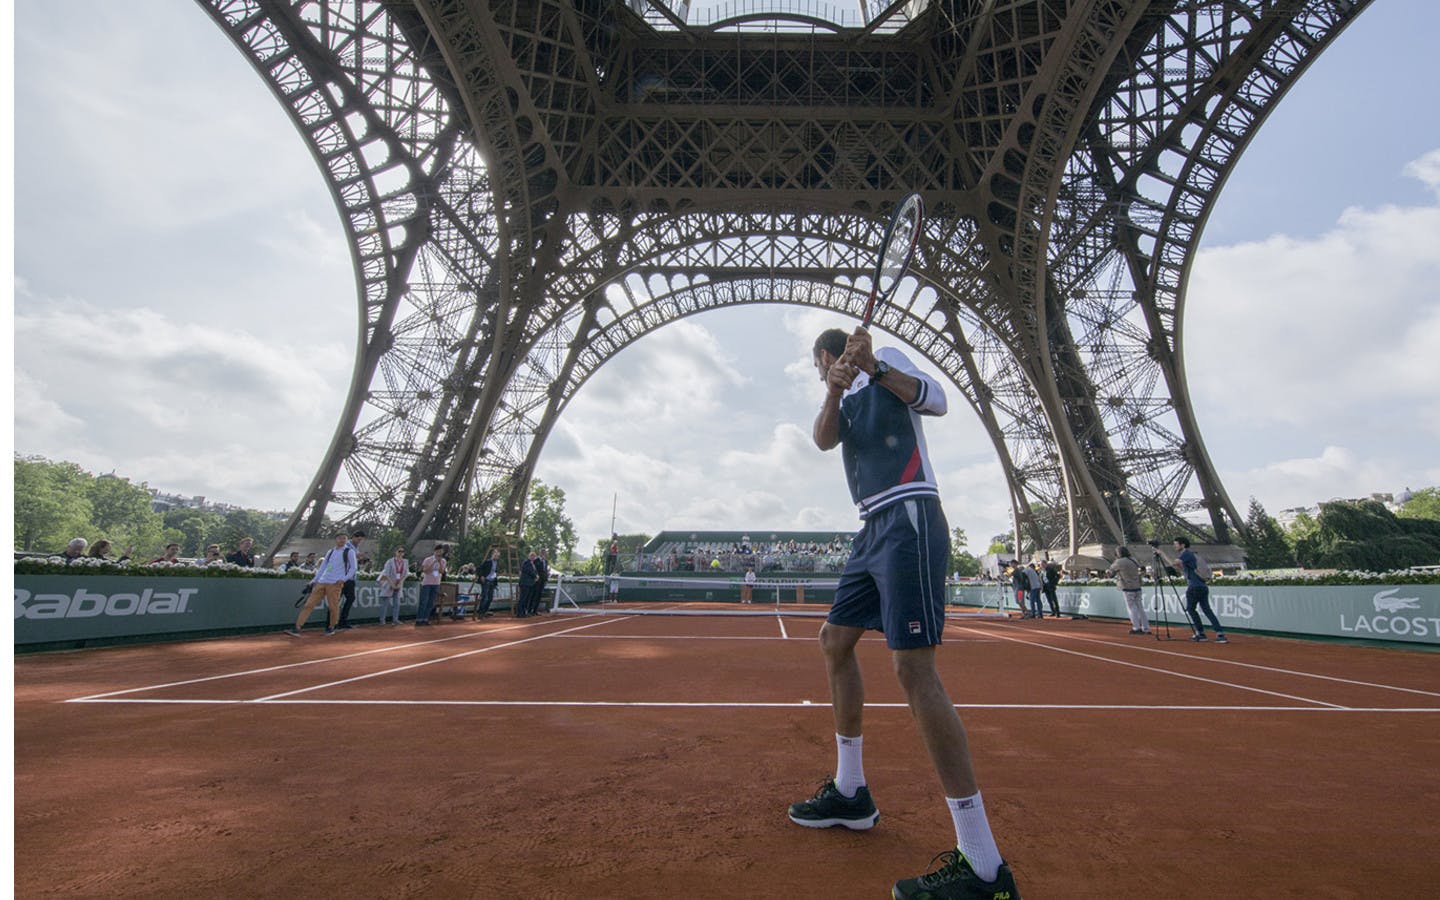 Roland Garros In The City: Let's Go! Garros 2021 Roland Garros Tournament Official Site